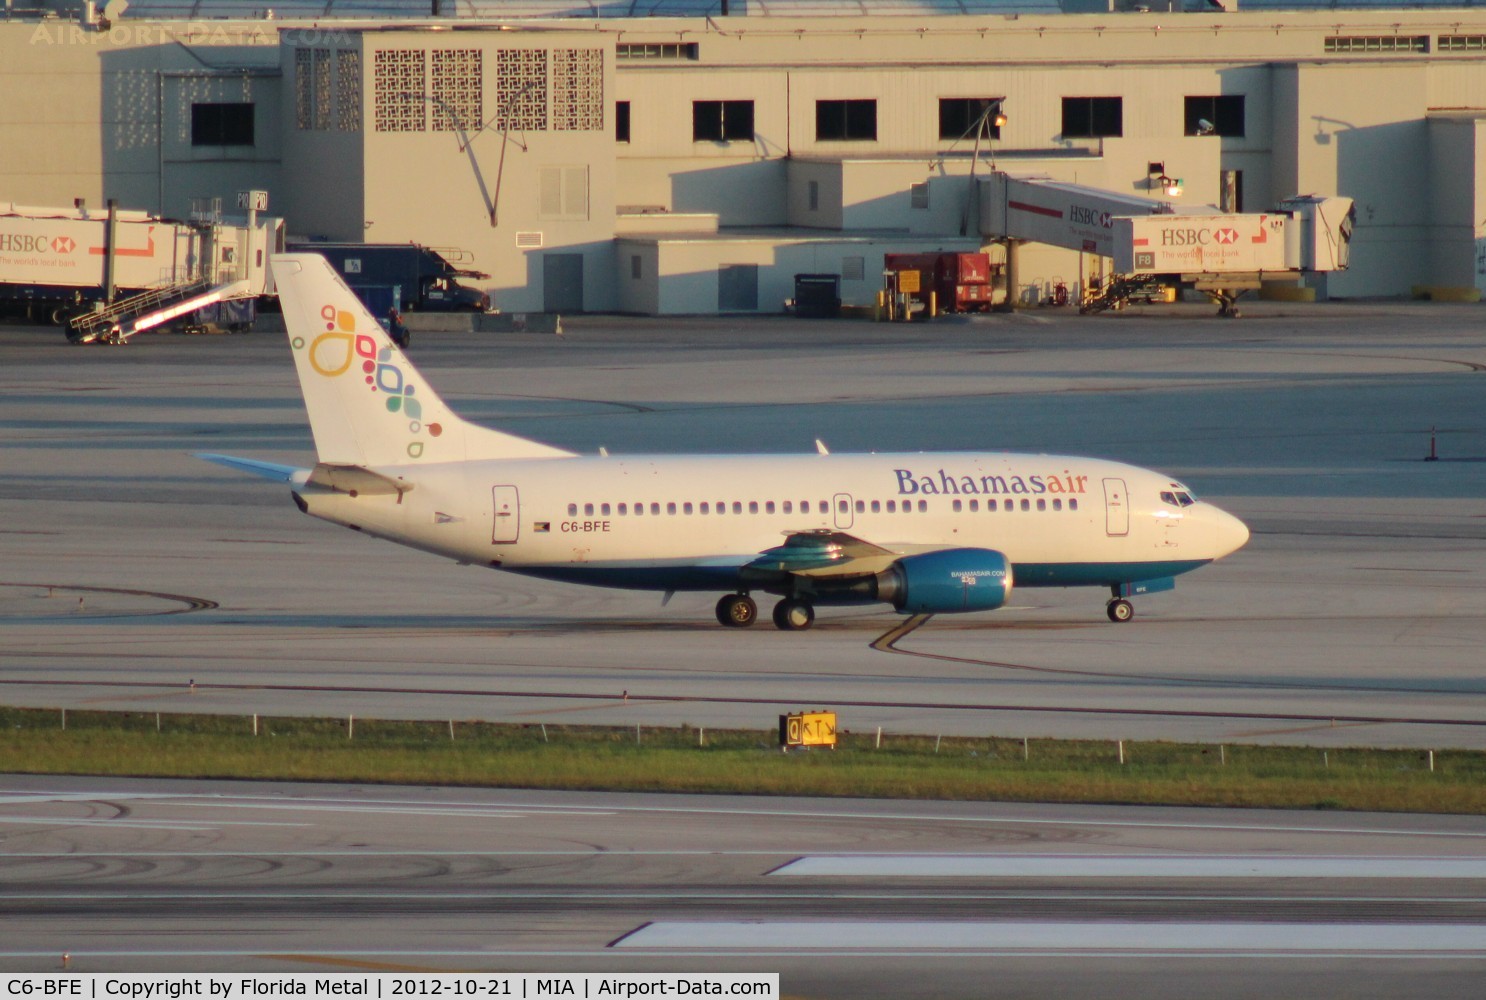 C6-BFE, 1993 Boeing 737-5H6 C/N 26450, Bahamas Air 737-500